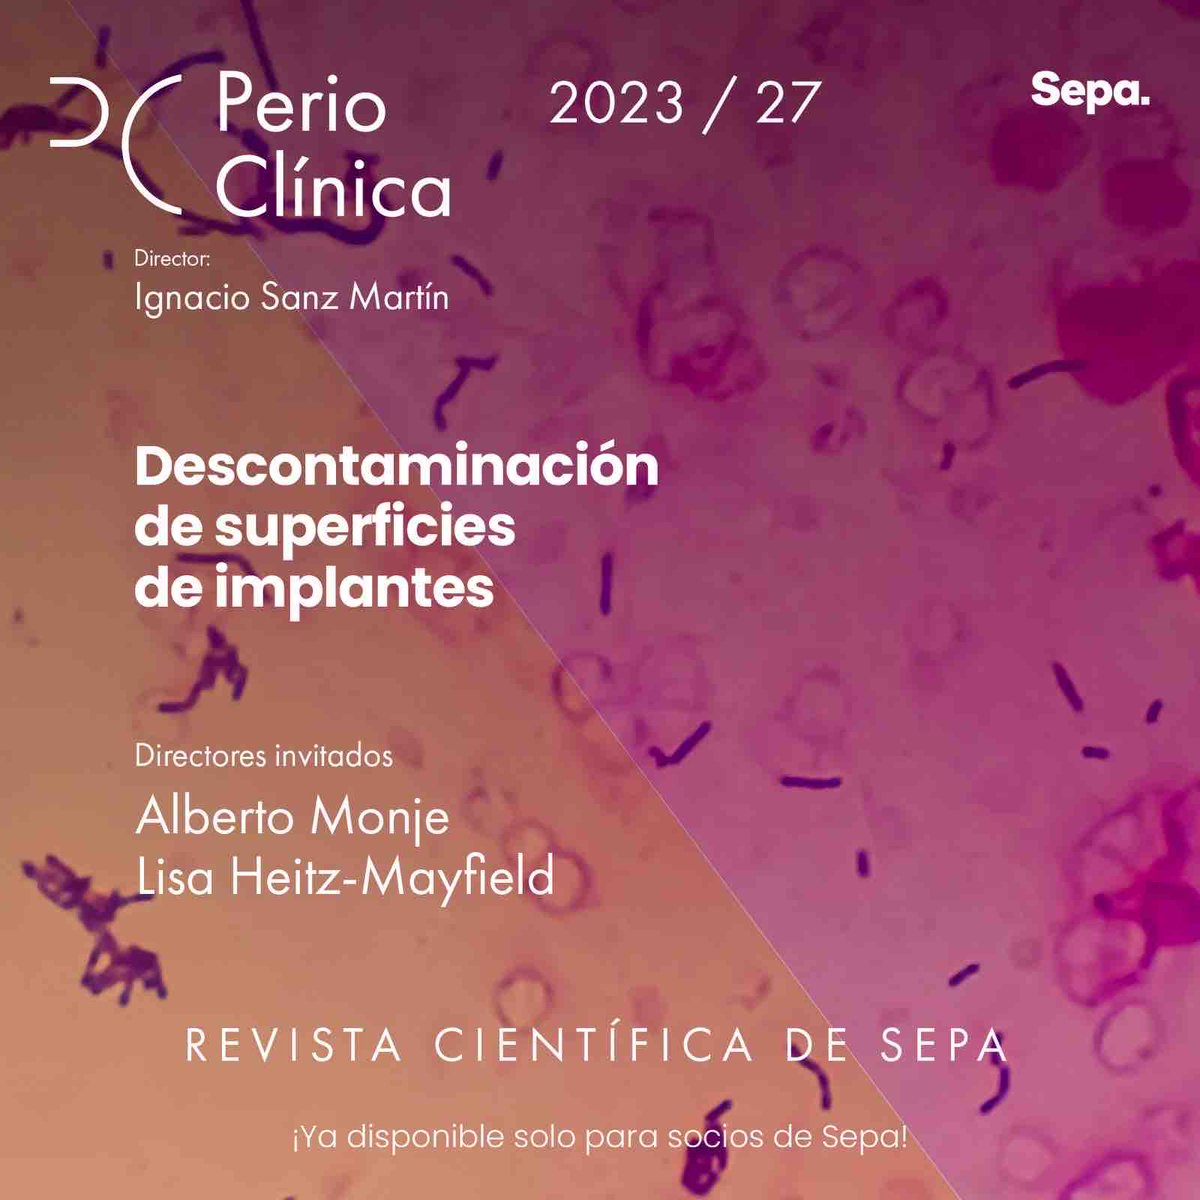 Ya disponible para socios Sepa el nuevo número de la revista PerioClínica, con los directores invitados Alberto Monje y Lisa Heitz-Mayfield. Accede con tus claves de socio en perioclinica.com